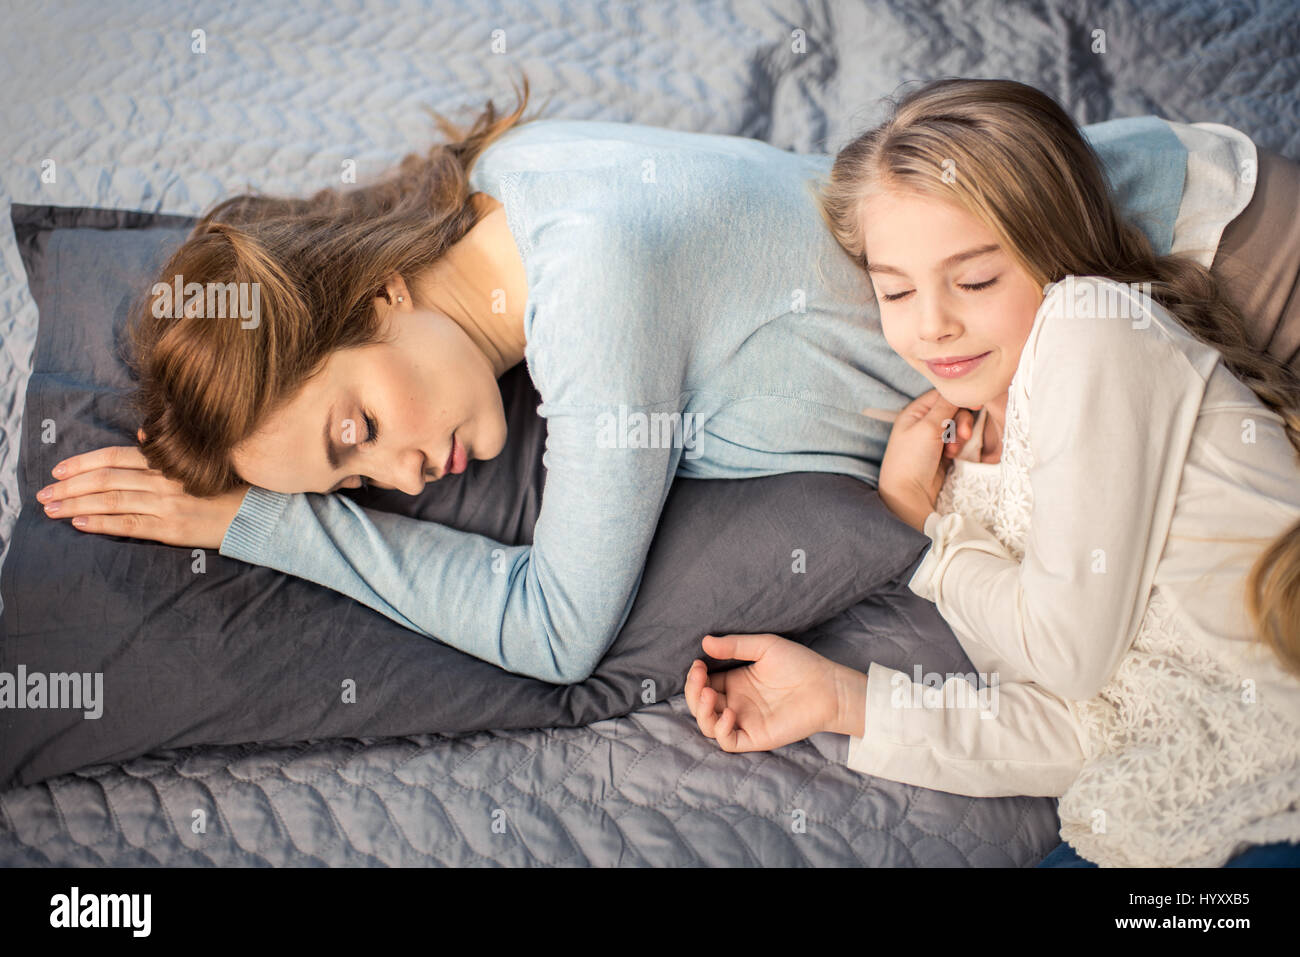 Мама лежит дочки. Мама с дочкой лежат на кровати. Мама и дочь валяются в кровати. Дочка лежит на маме. Дочь ледижит на кровати.